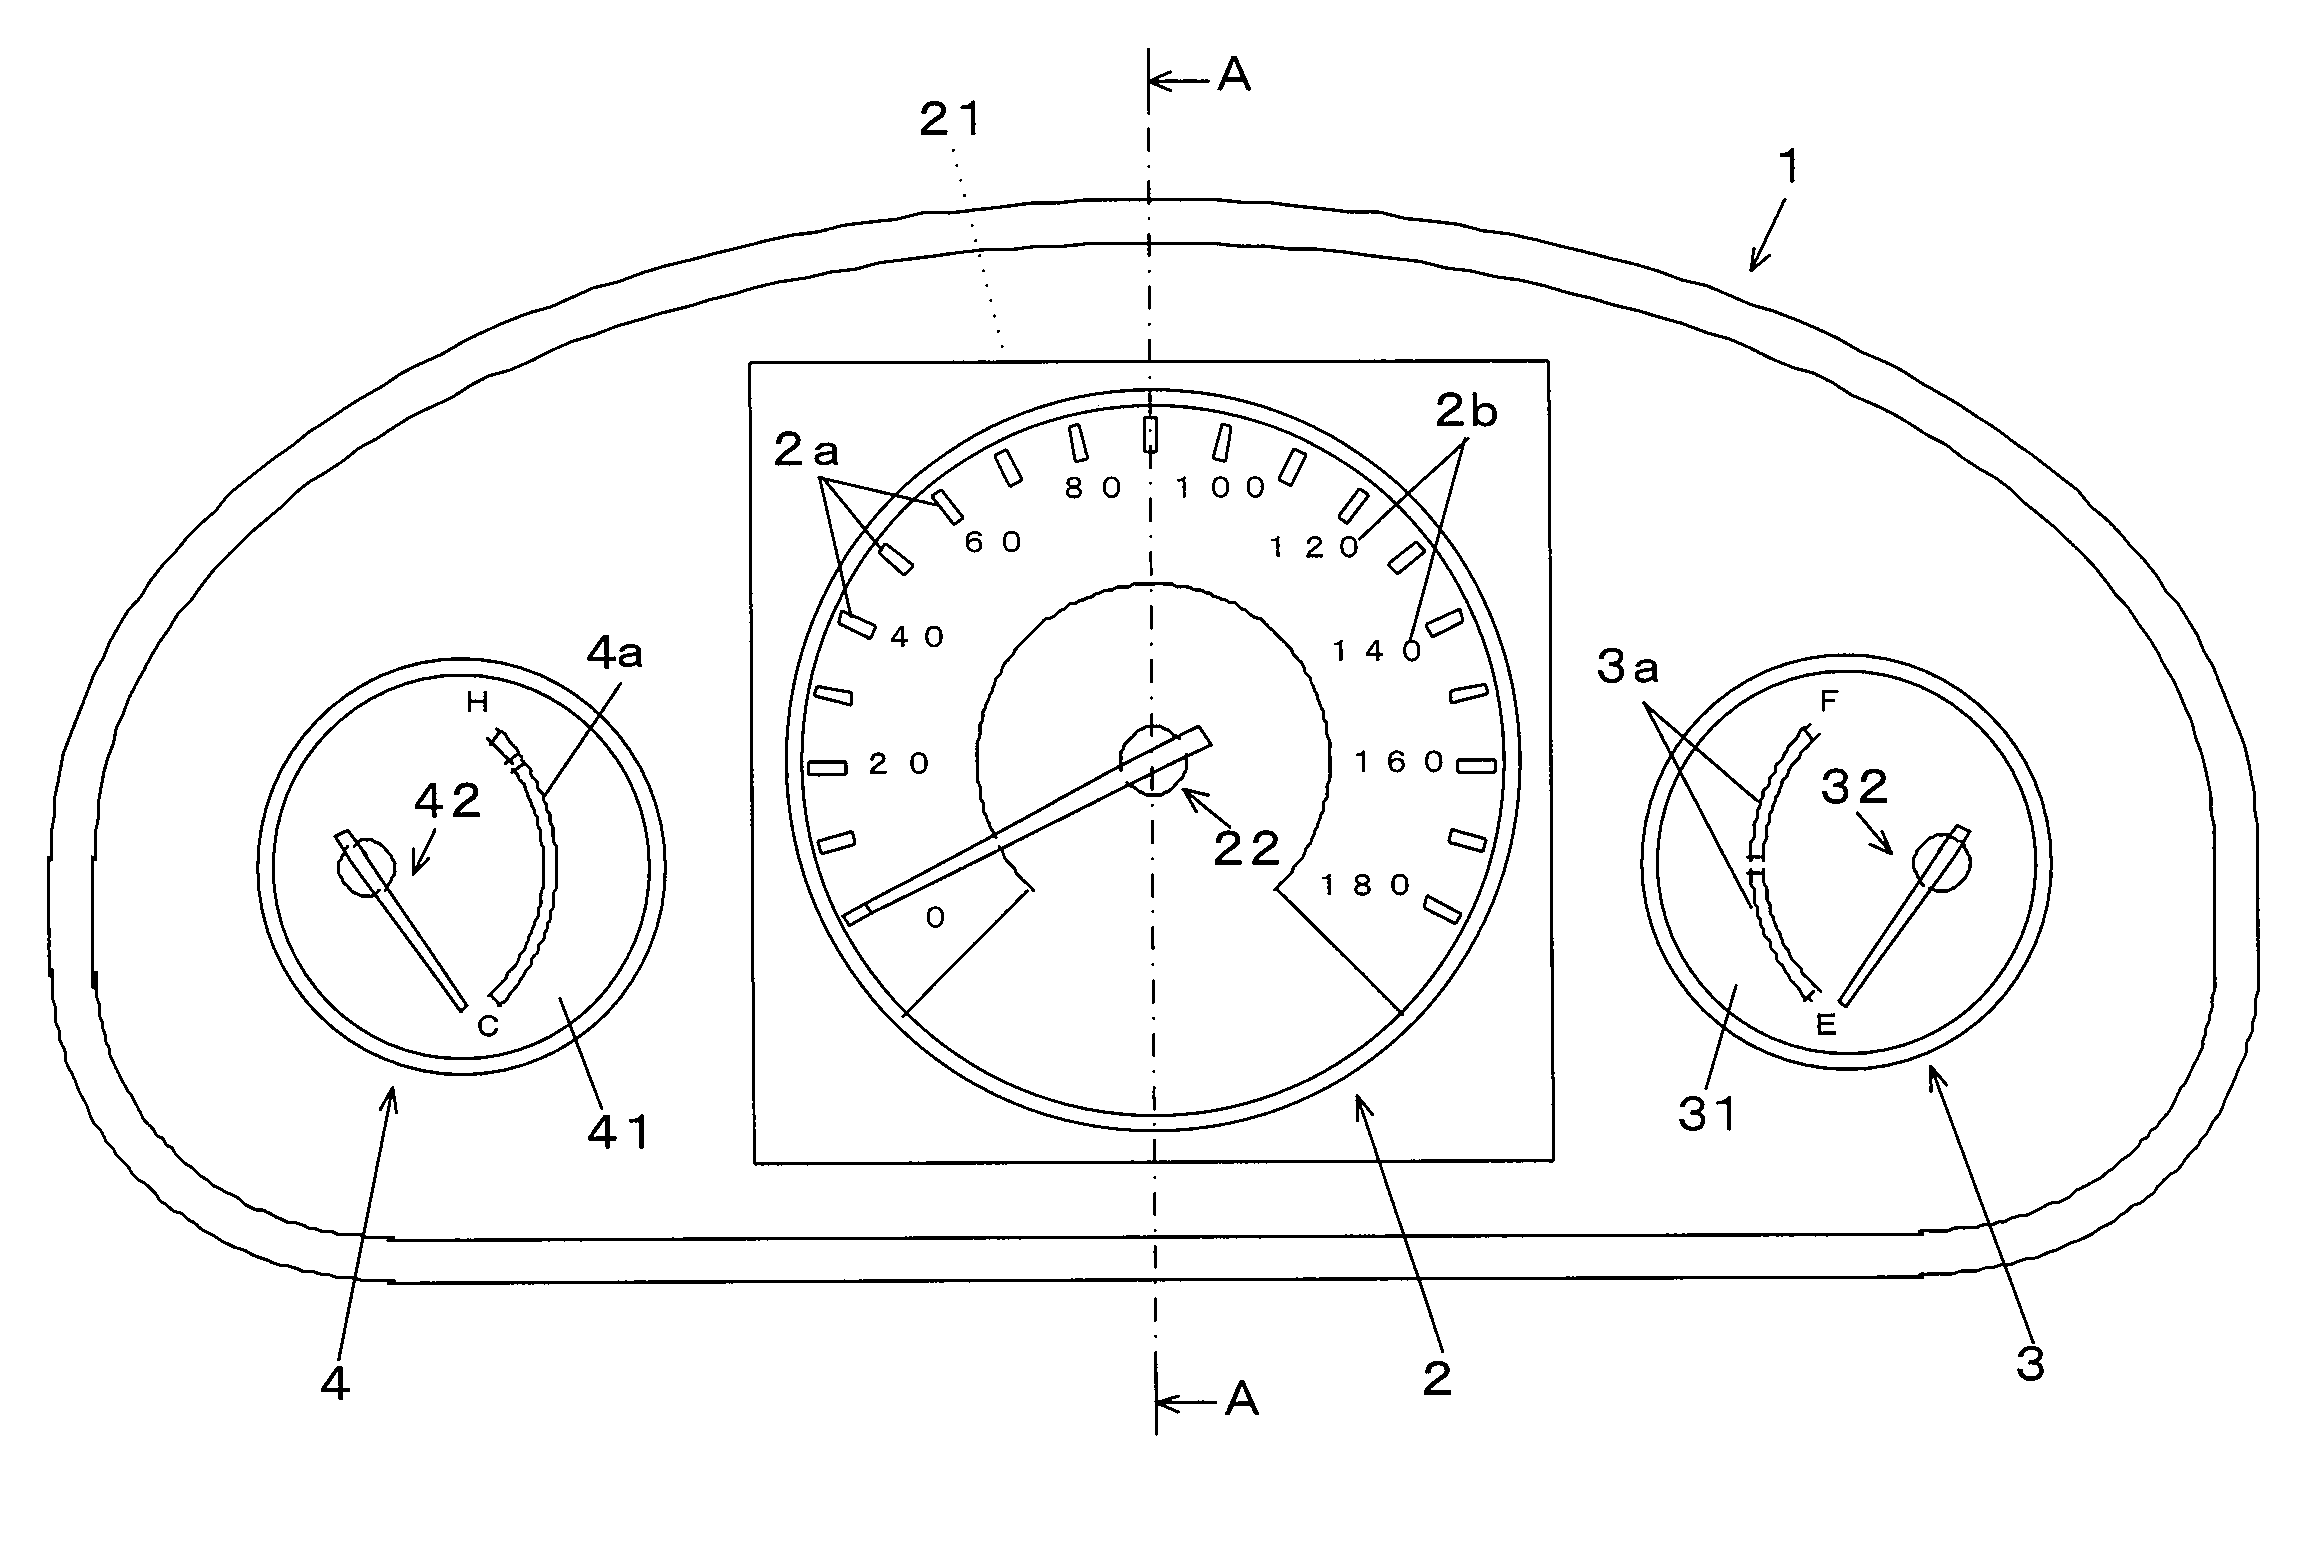 Indicator apparatus